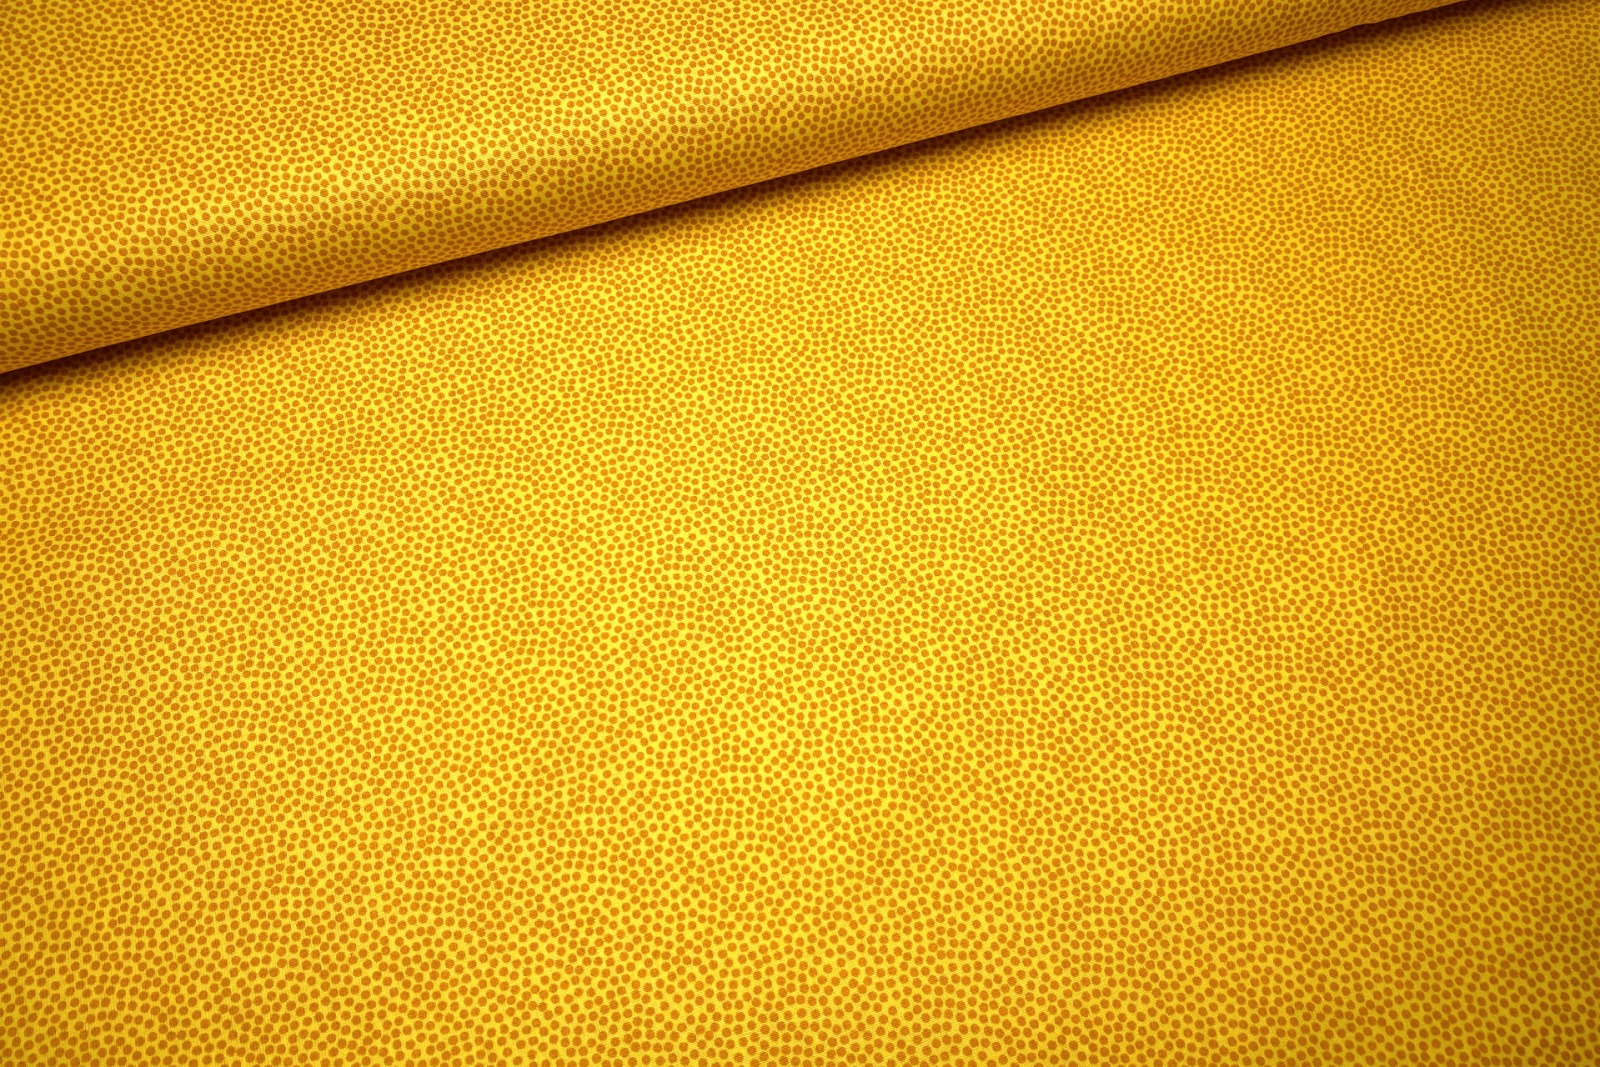 Baumwollwebware - unregelmäßige Punkte - gelb - 100 Baumwolle - Dotty - Swafing 3